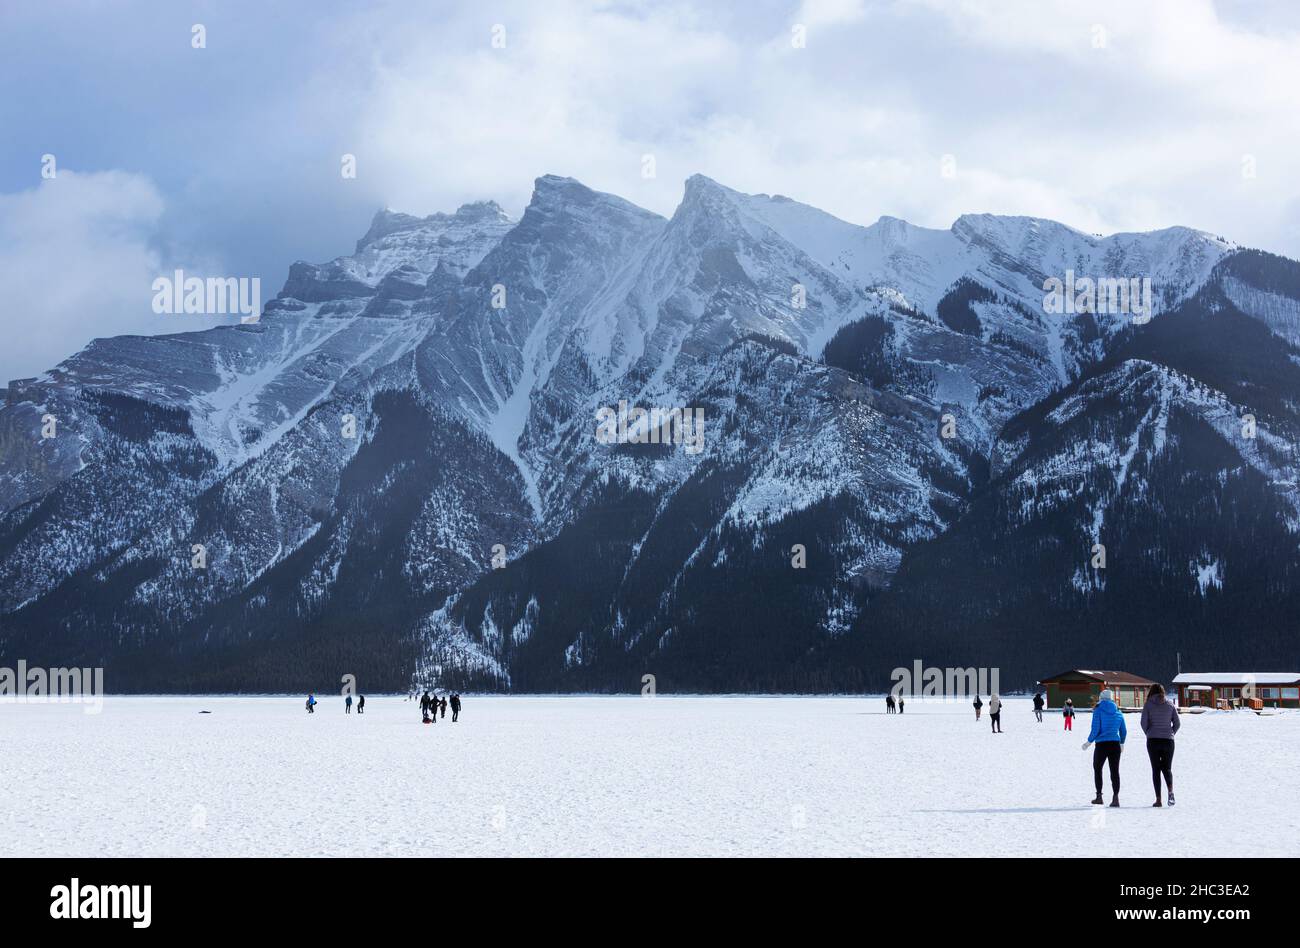 Visitantes inidentificables caminando por el lago congelado Minnewanka en las Montañas Rocosas Canadienses del Parque Nacional Banff durante el frío invierno con el Monte Inglismaldi Foto de stock